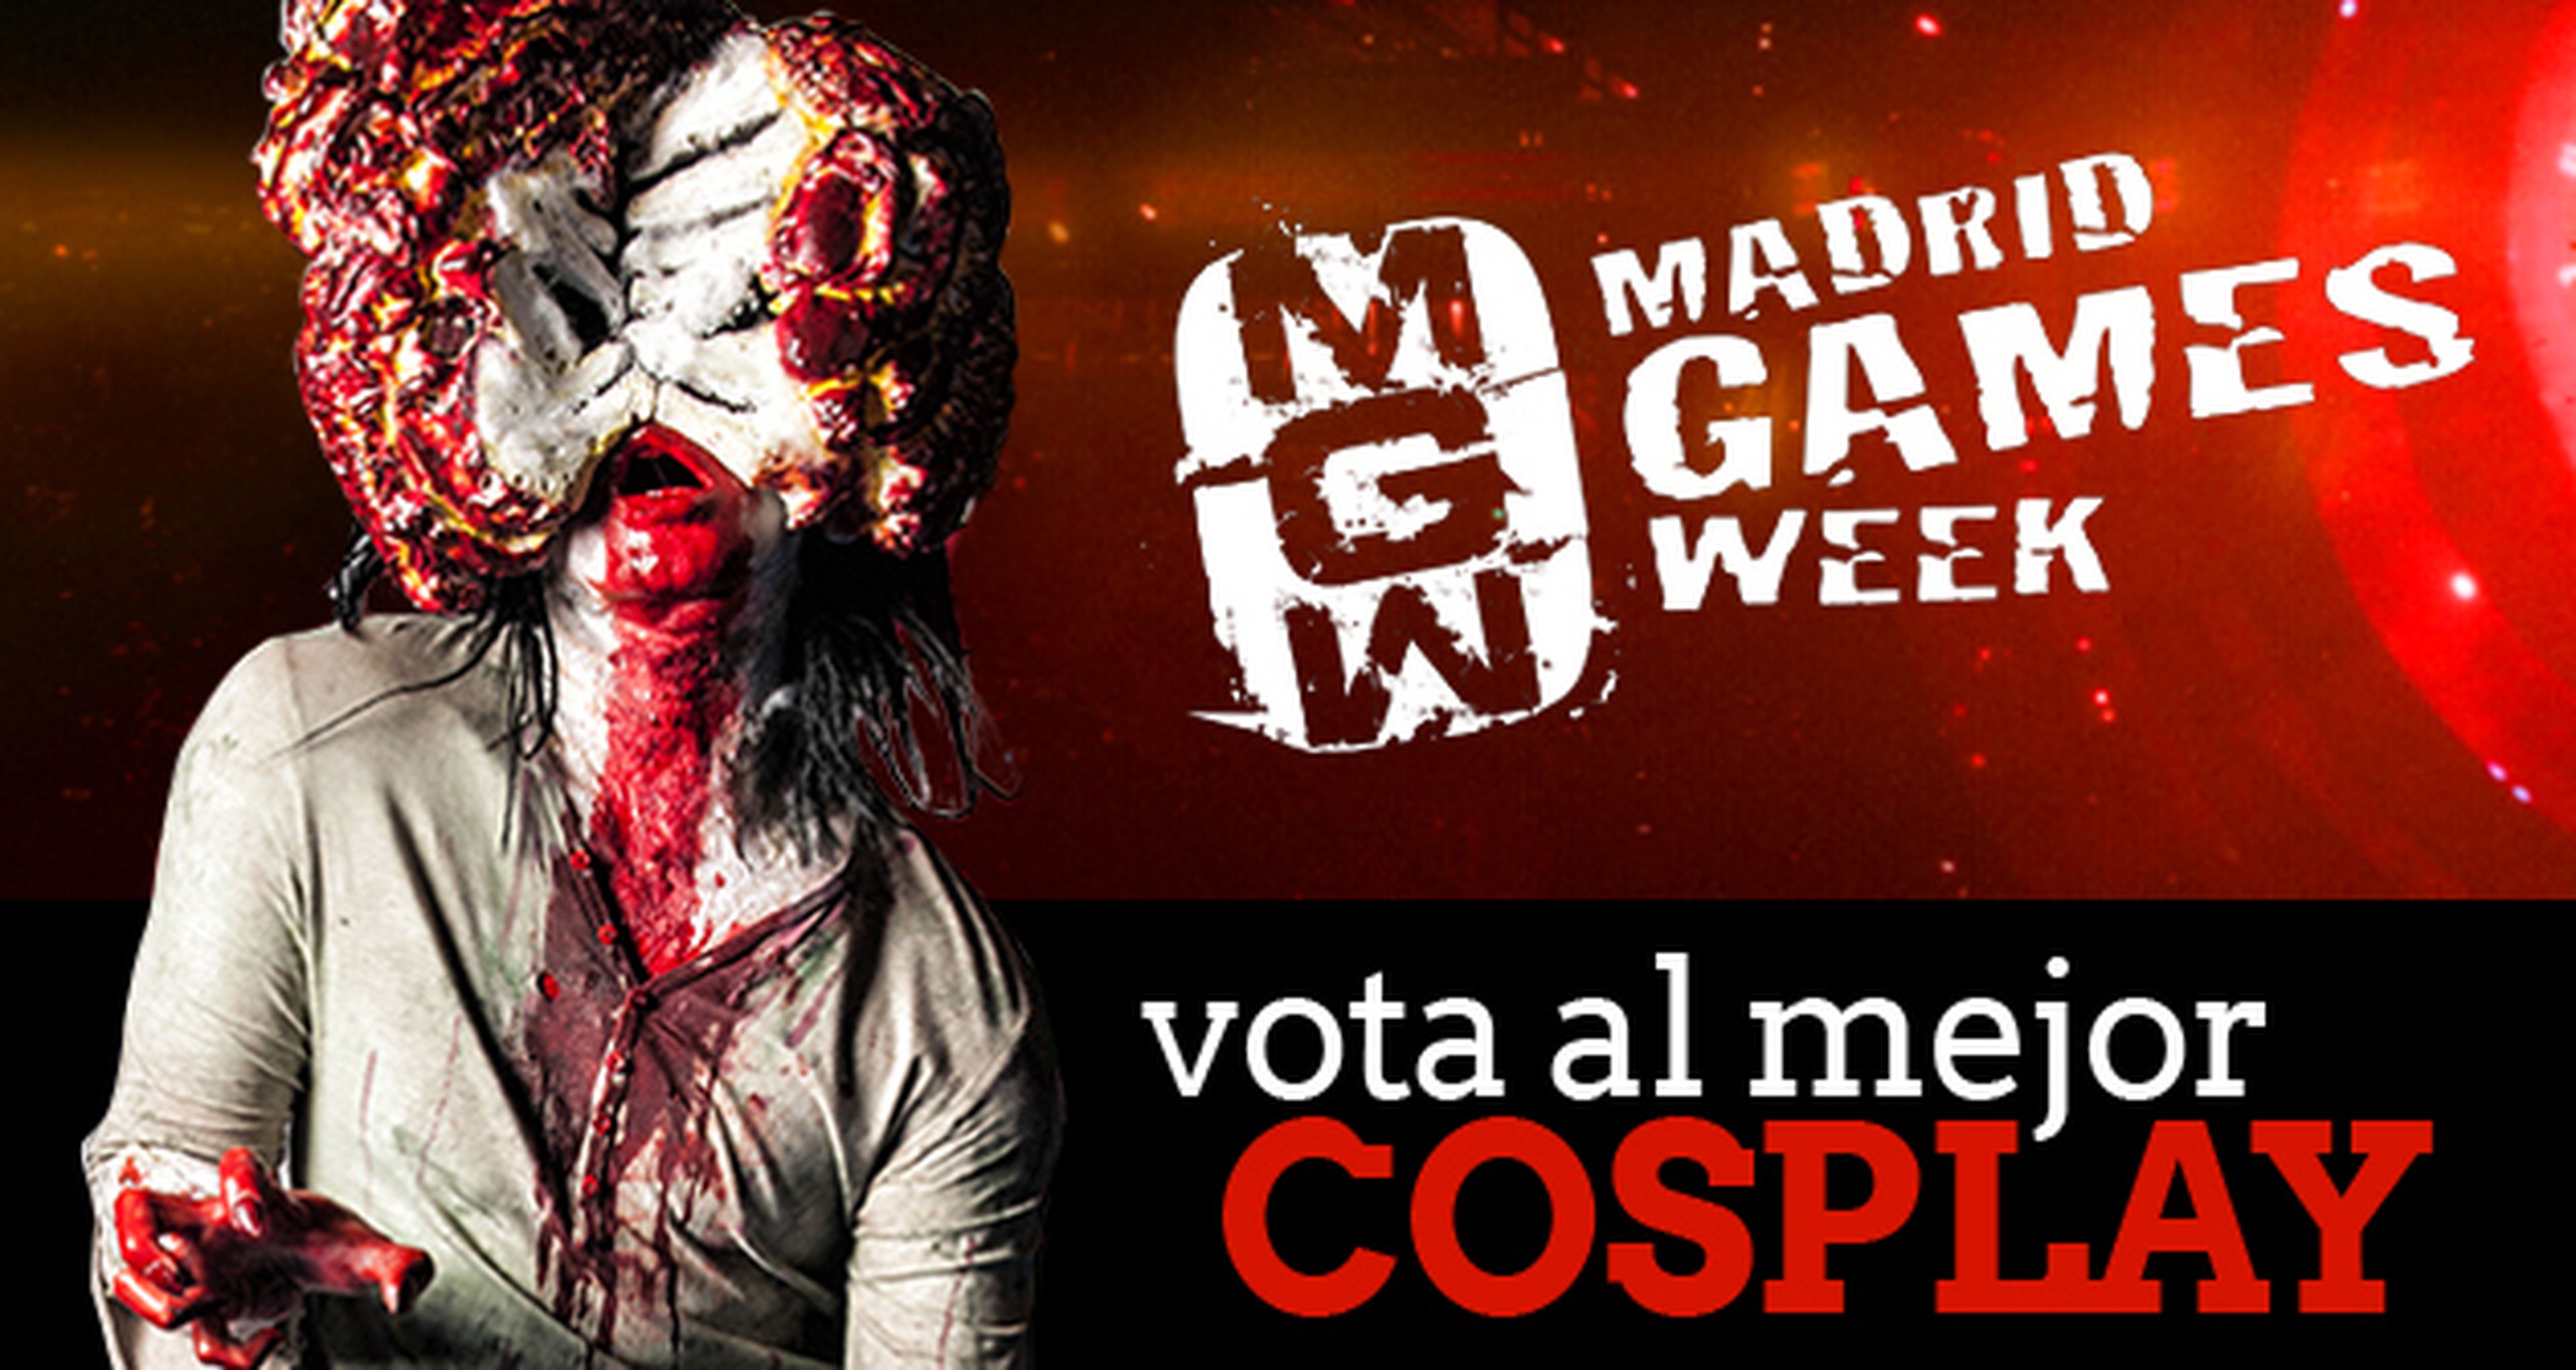 Concurso de cosplay Madrid Games Week: ¡Vota!